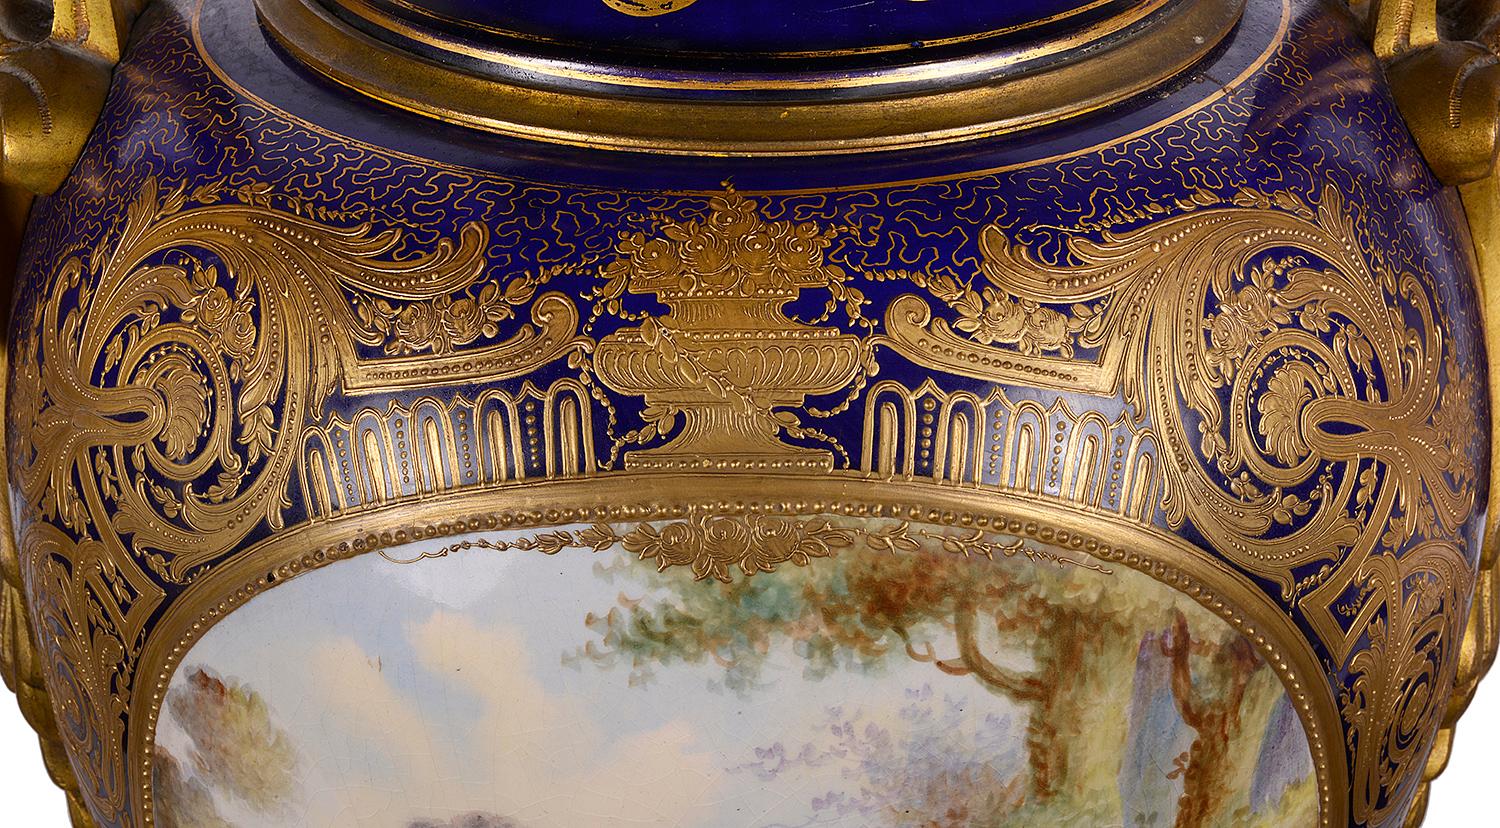 Grande paire de vases en porcelaine française de style Sèvres de la fin du XIXe siècle, de bonne qualité, chacun doté d'une magnifique anse en bronze doré et d'un feuillage de chaque côté, sur fond bleu cobalt, avec un décor classique doré. Panneaux